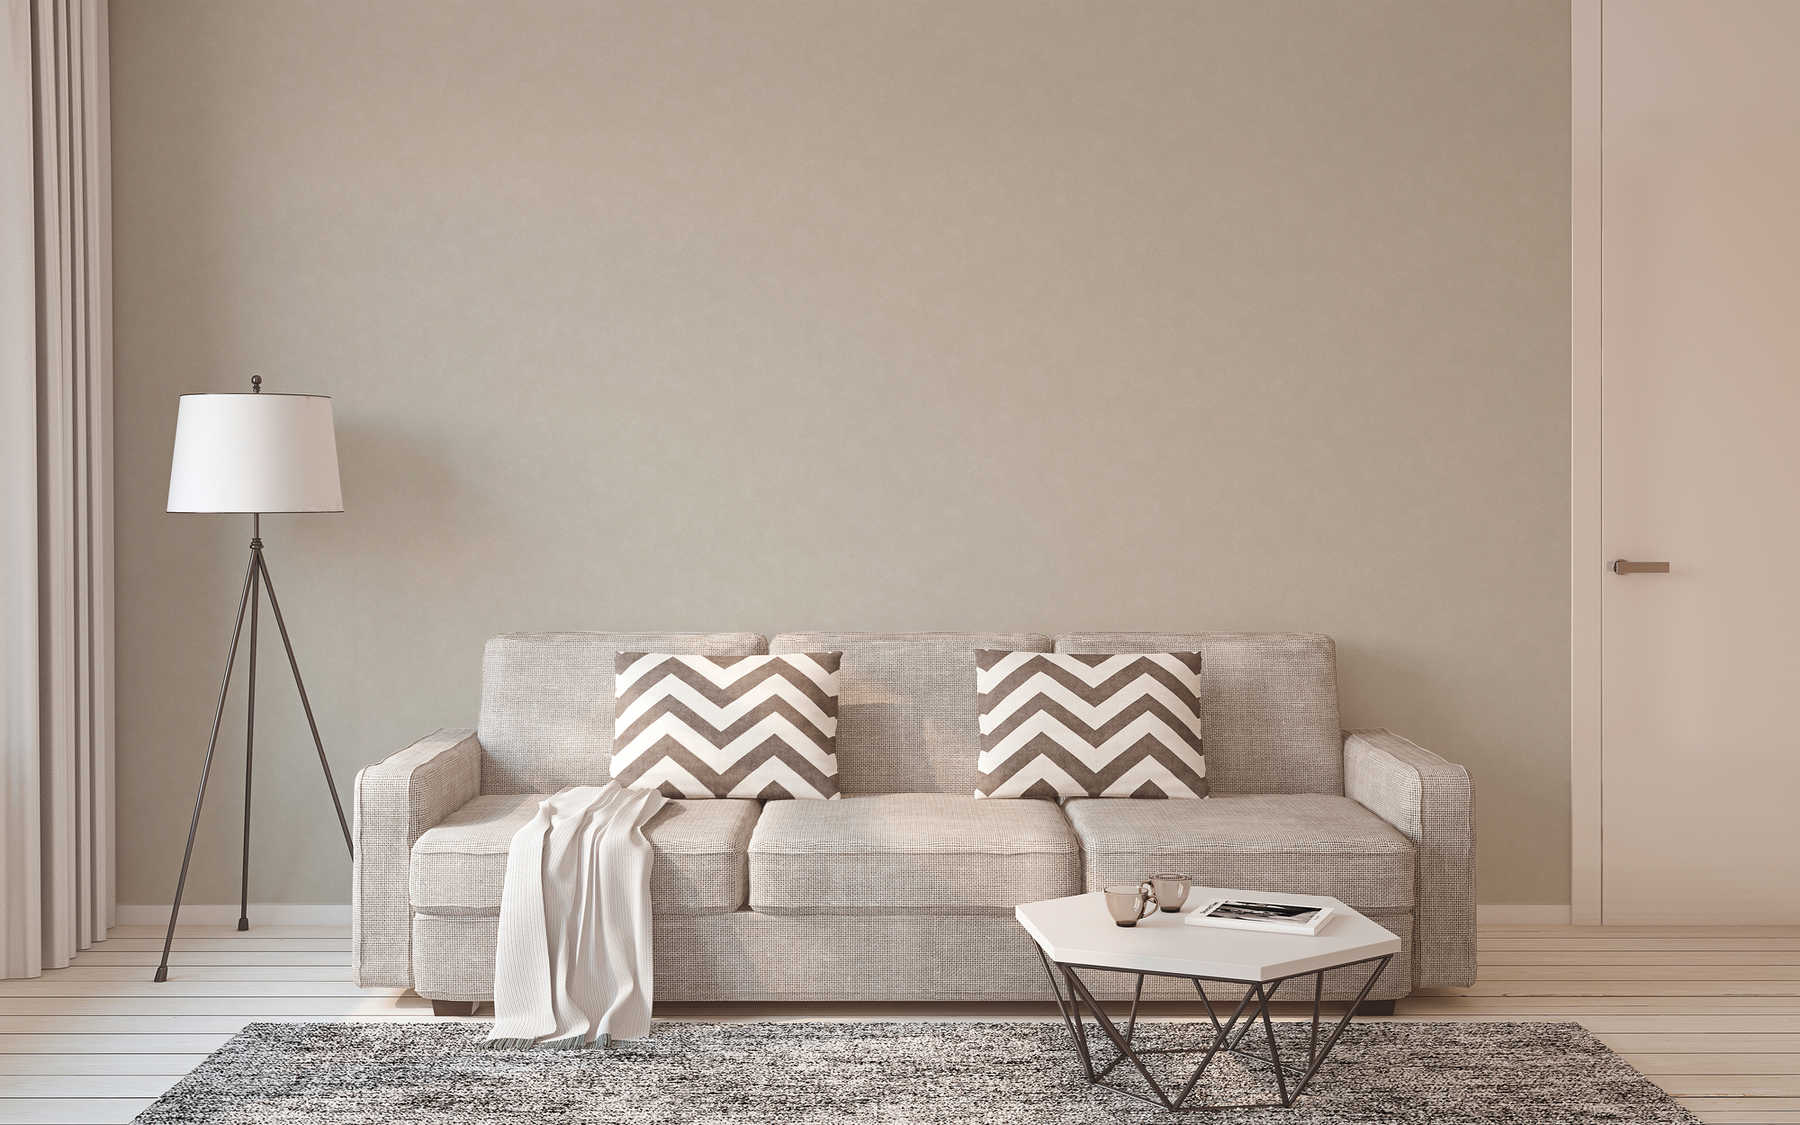             Licht grijs beige behang met subtiele textuur & kleur arceringen
        